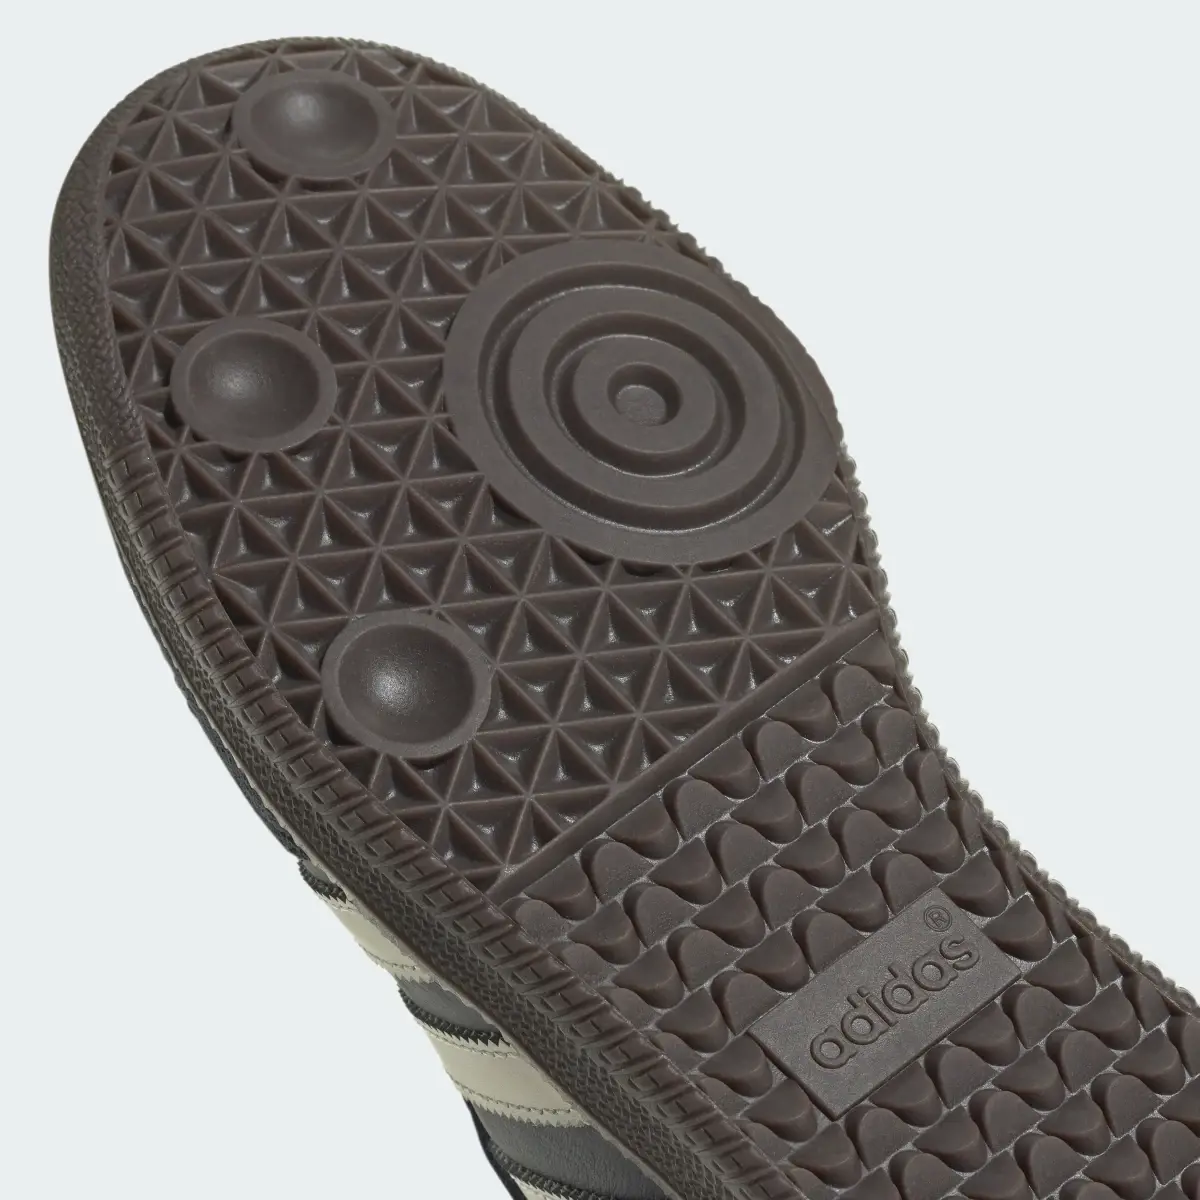 Adidas Samba OG Schuh. 3